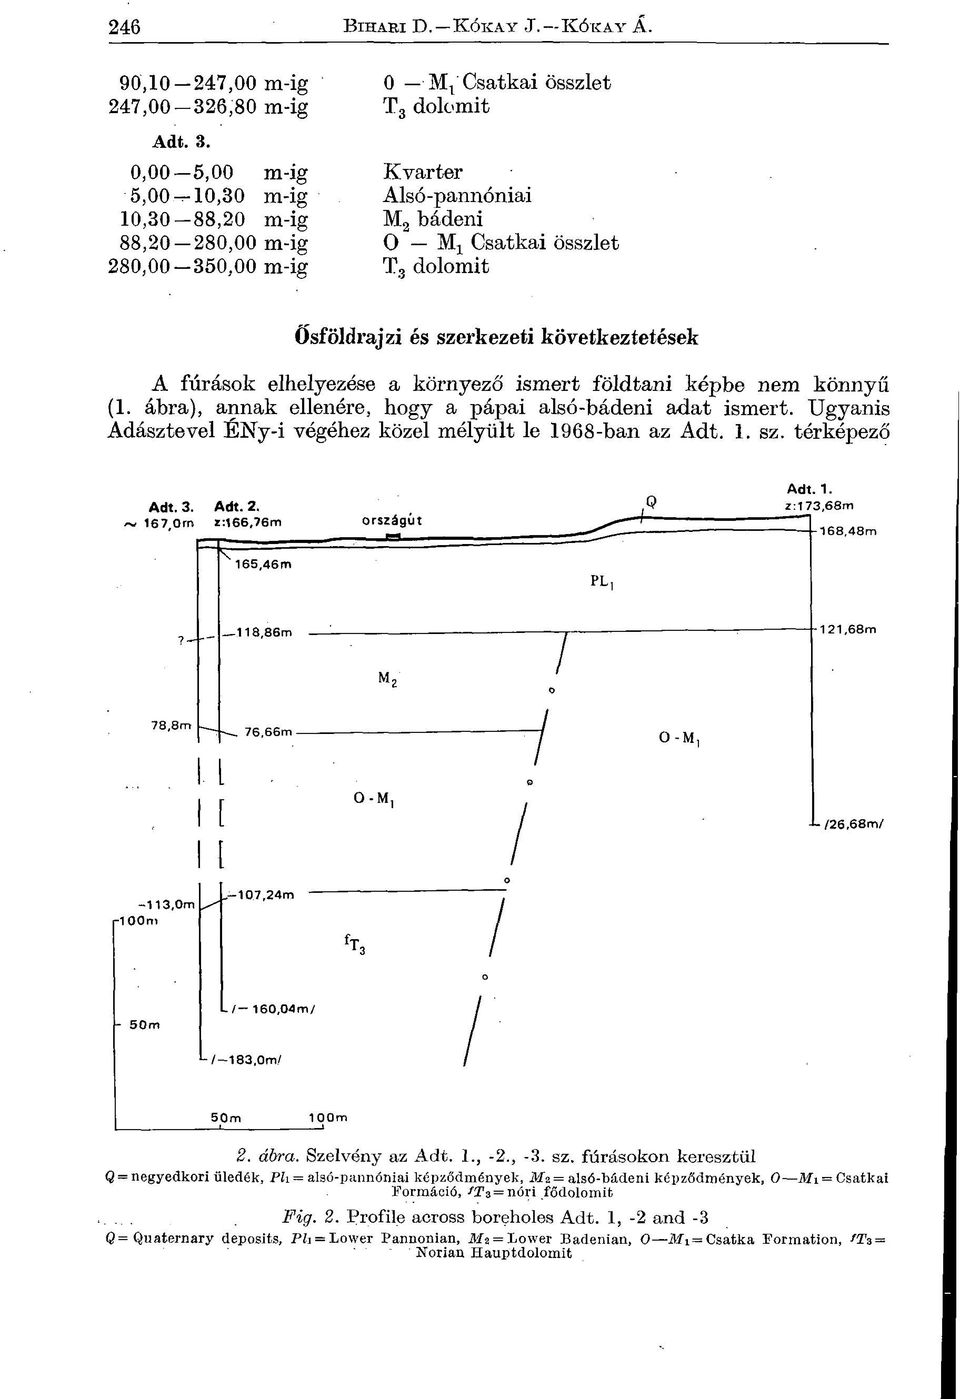 fúrások elhelyezése a környező ismert földtani képbe nem könnyű (1. ábra), annak ellenére, hogy a pápai alsó-bádeni adat ismert. Ugyanis Adásztevel ENy-i végéhez közel mélyült le 1968-ban az Adt. 1. sz.